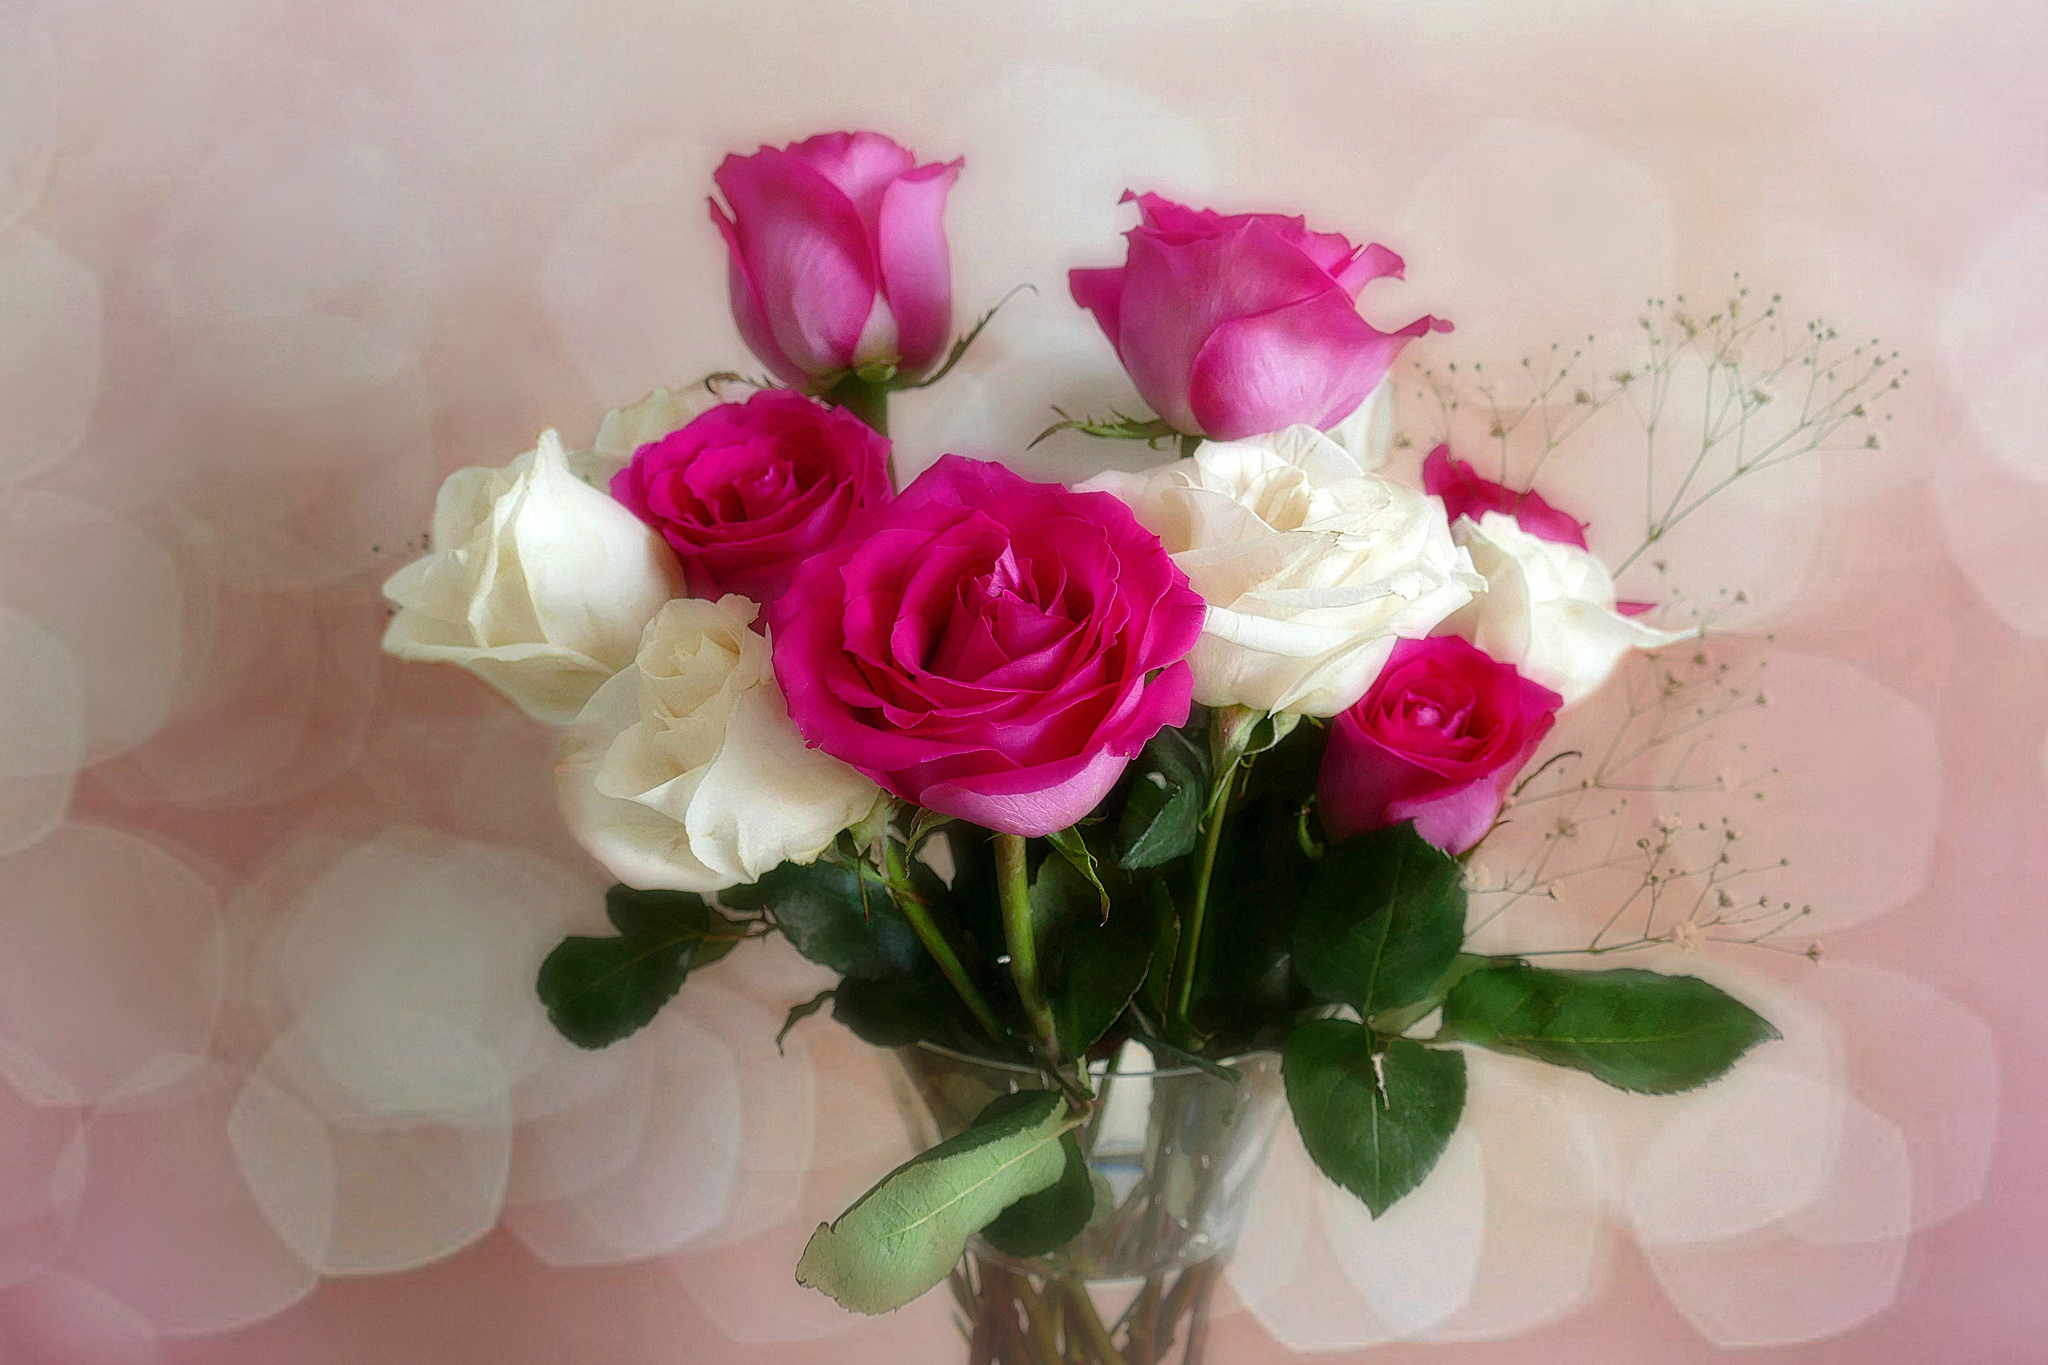 Букет роз в вазе на столе